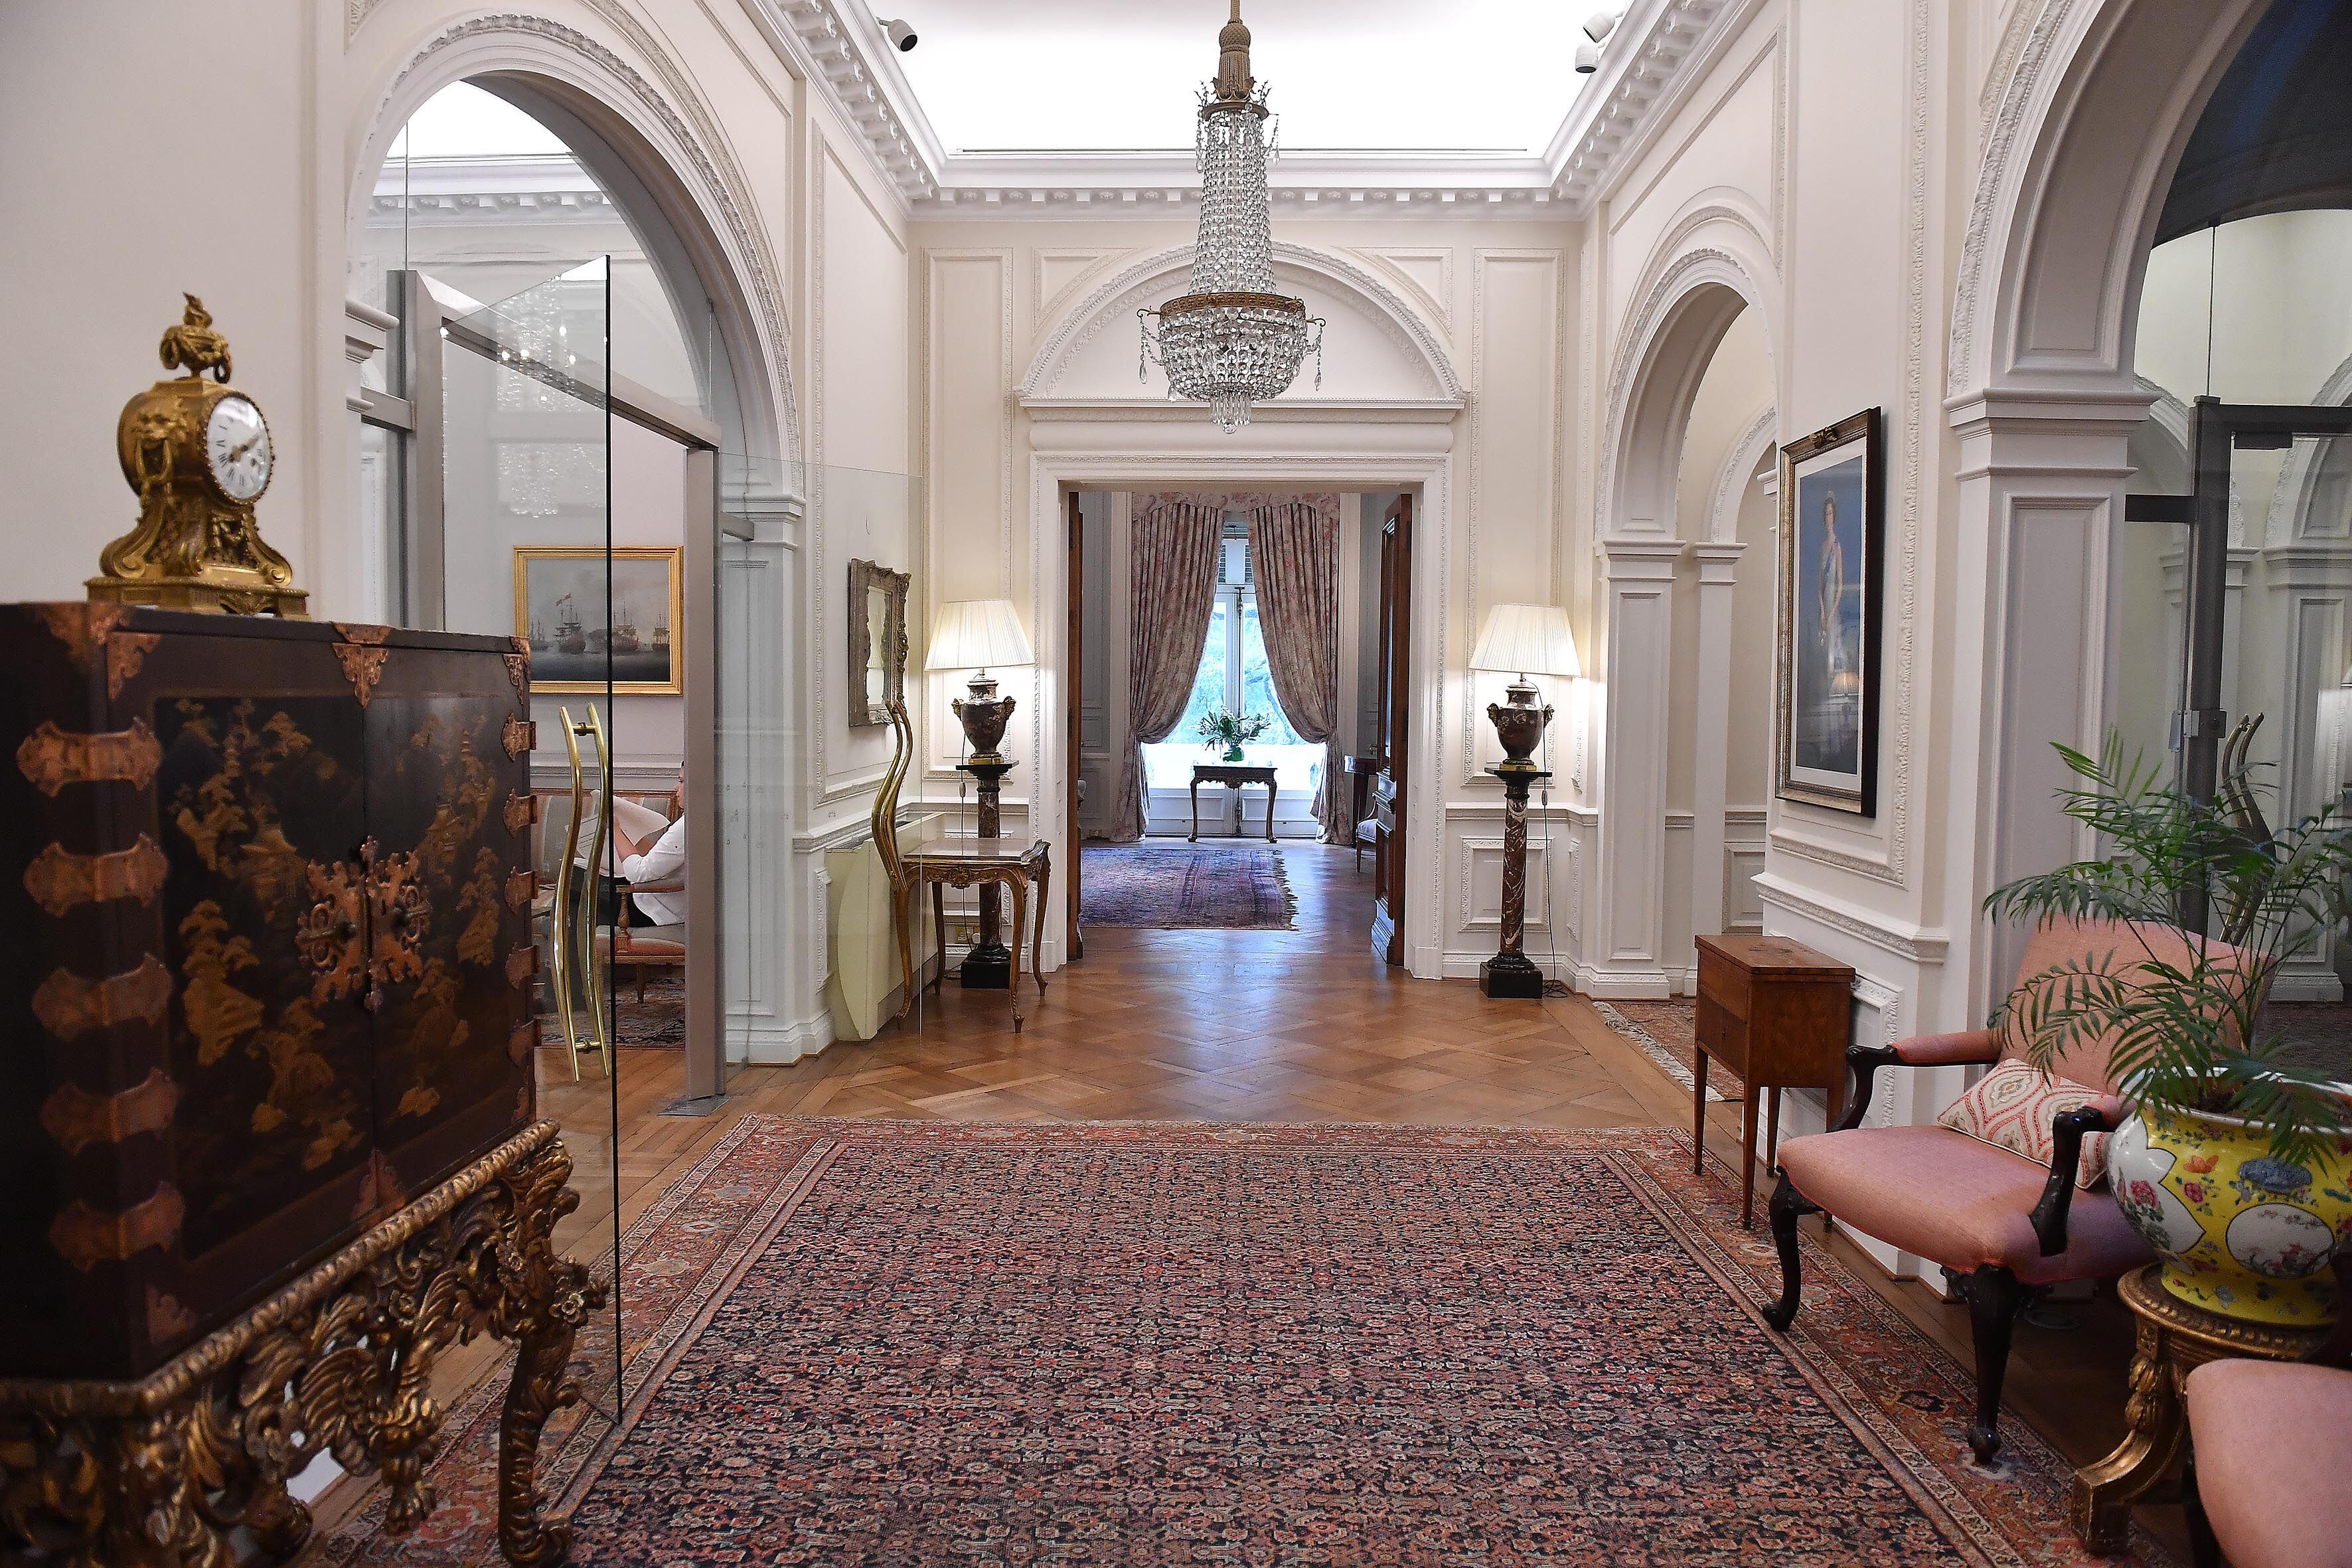 El Gobierno británico adquirió la residencia por 125.000 libras, aproximadamente 2.400.000 pesos de la época (Maximiliano Luna)